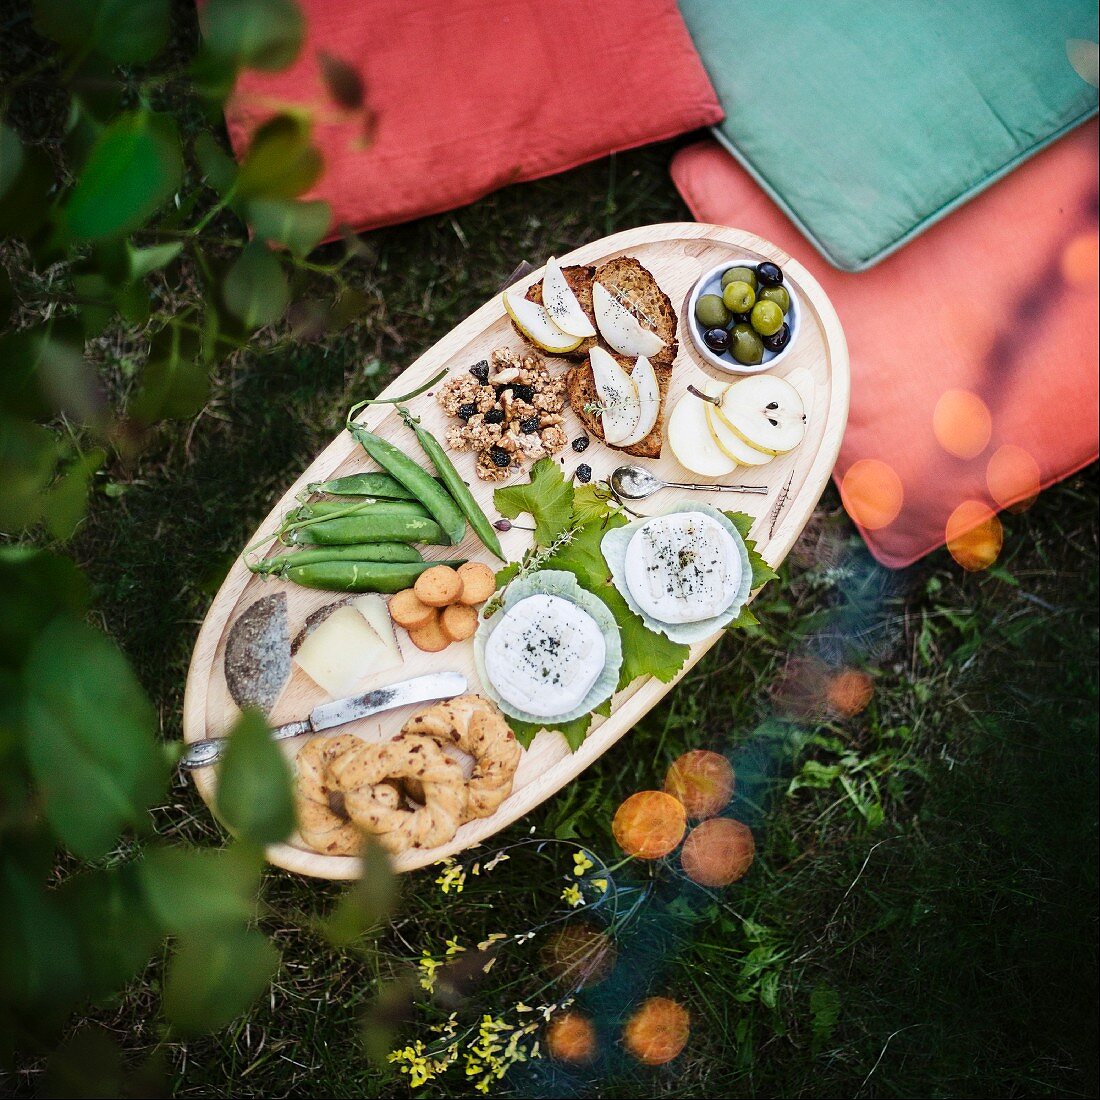 Picknickplatte mit Gebäck, Gemüse, Obst, Nüssen und Käse im Gras (Aufsicht)